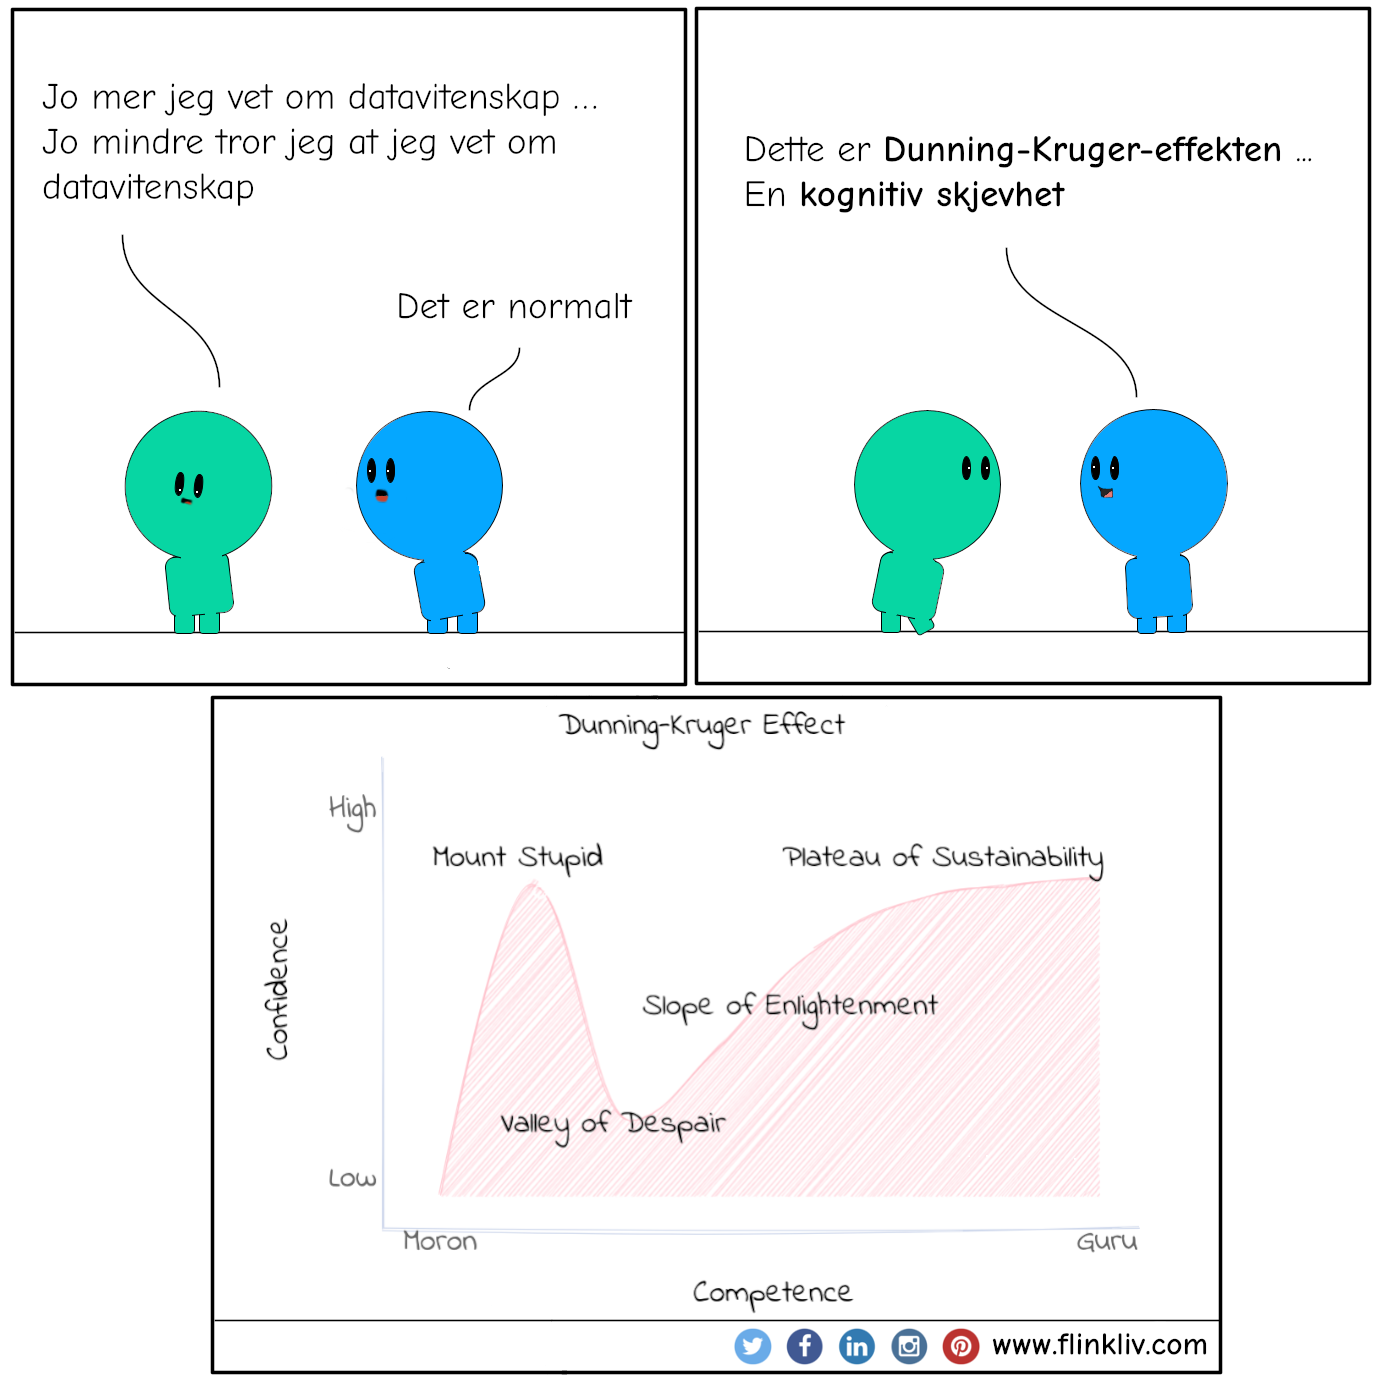 Samtale mellom A og B om Dunning-Kruger-effekten.
            A: Jo mer jeg vet om datavitenskap, jo mindre tror jeg at jeg vet om datavitenskap
            B: Det er normalt
            B: Dette er Dunning-Kruger-effekten, en kognitiv skjevhet.
                                     
              